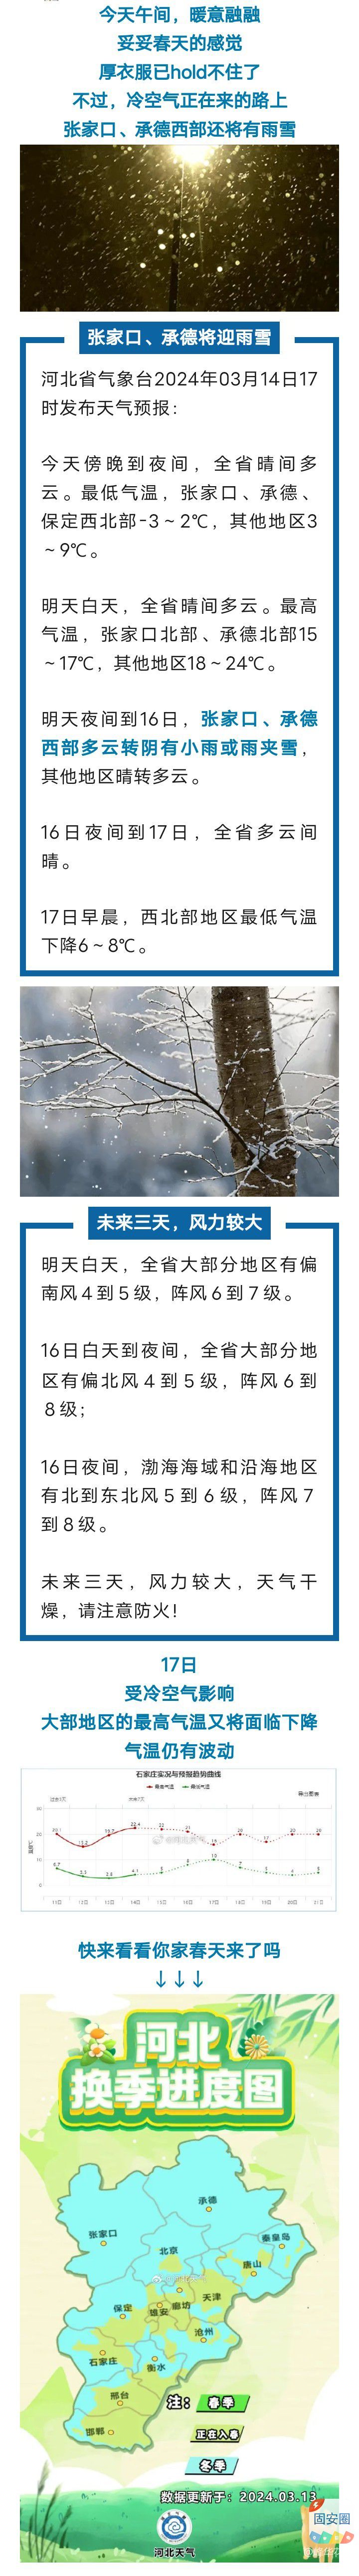 河北2市迎雨雪！未来三天…8508 作者:峰华花园 帖子ID:292234 河北,雨雪,未来,三天